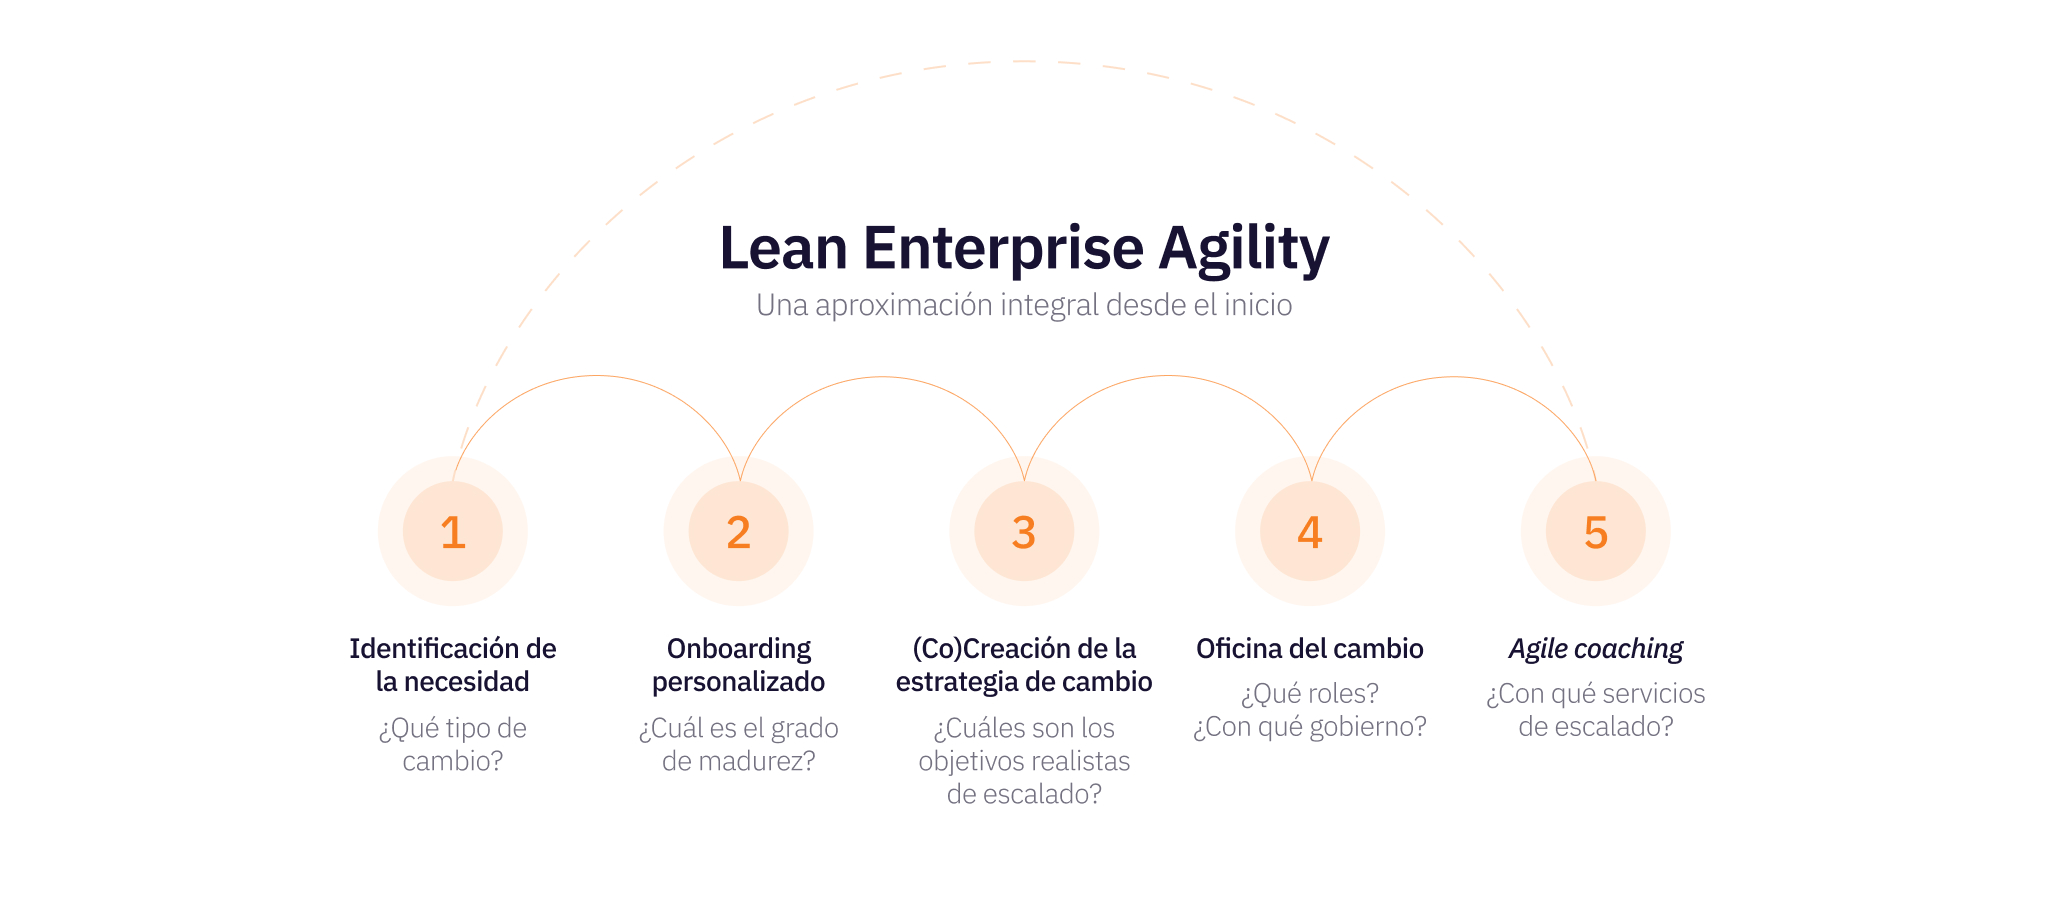 Aplicando nuestra solución Lean Enterprise Agility